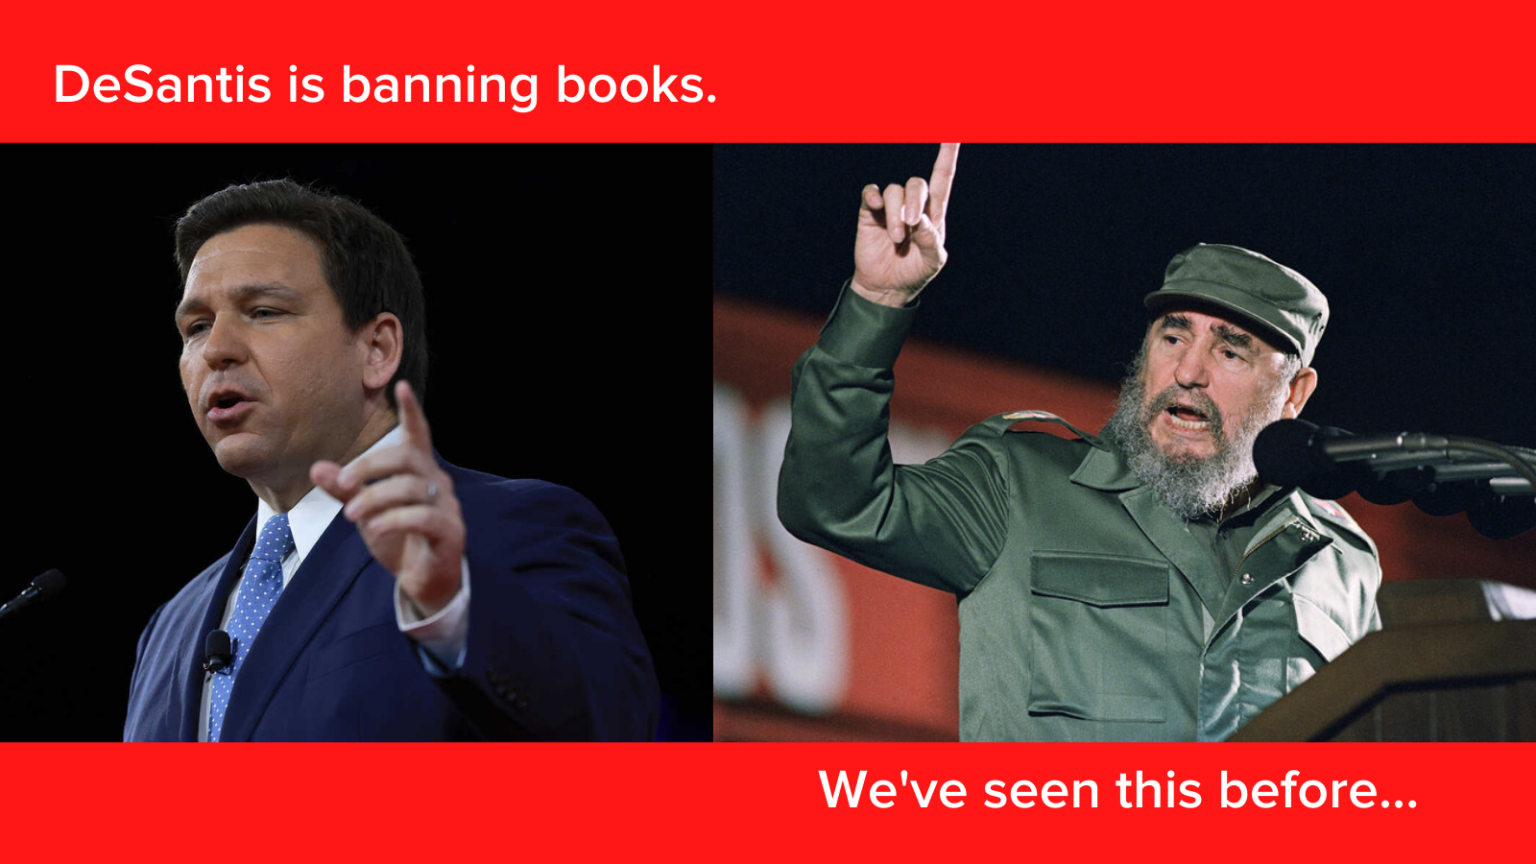 Ο DeSantis όπως ο Κάστρο απαγορεύει τα βιβλία